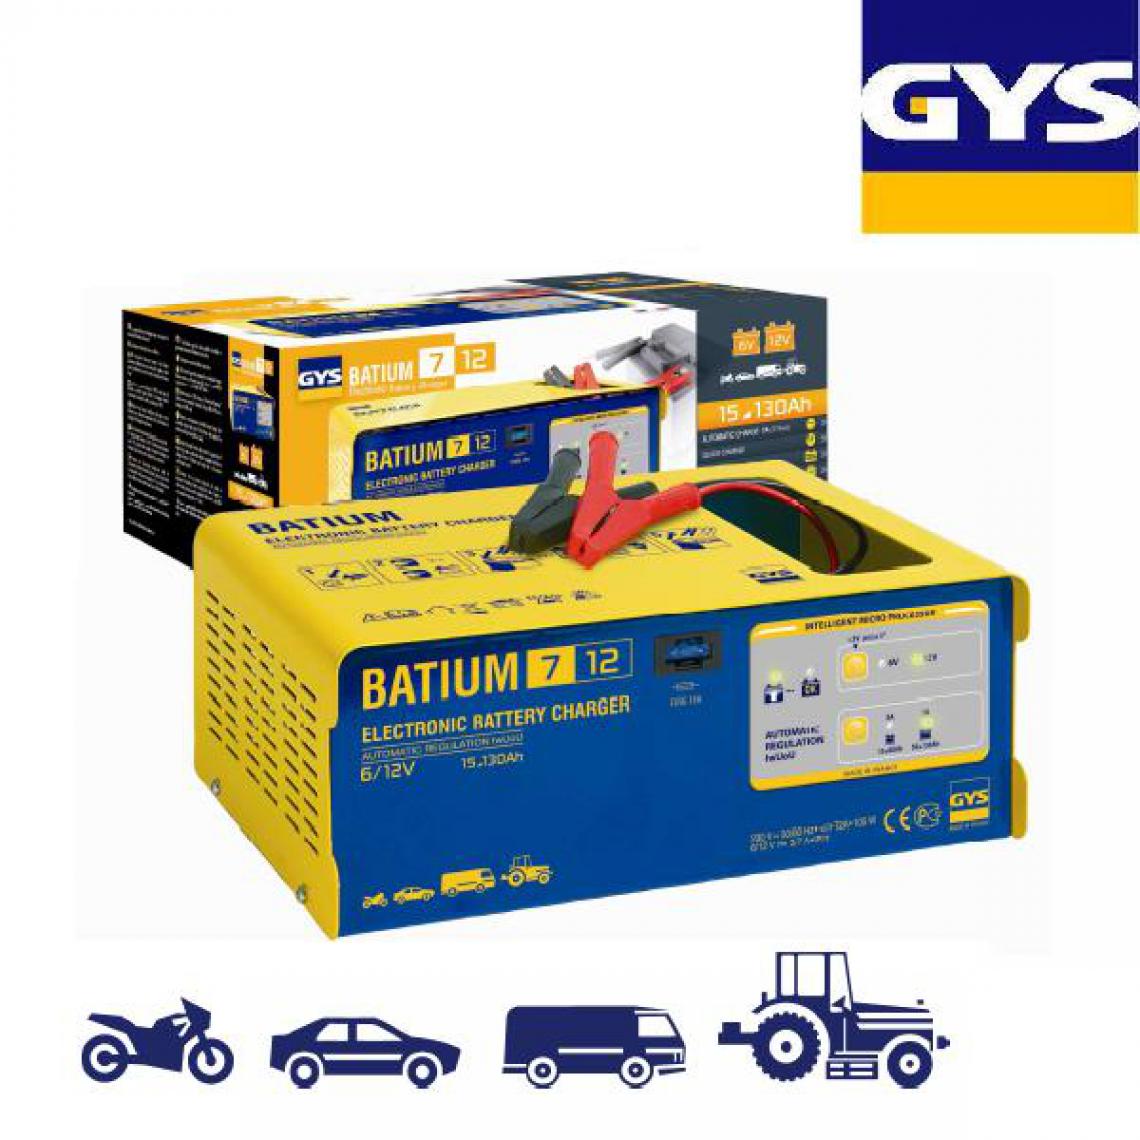 Gys - Gys - Chargeur batterie automatique 6V-12 -Batium 7.12 - Consommables pour outillage motorisé